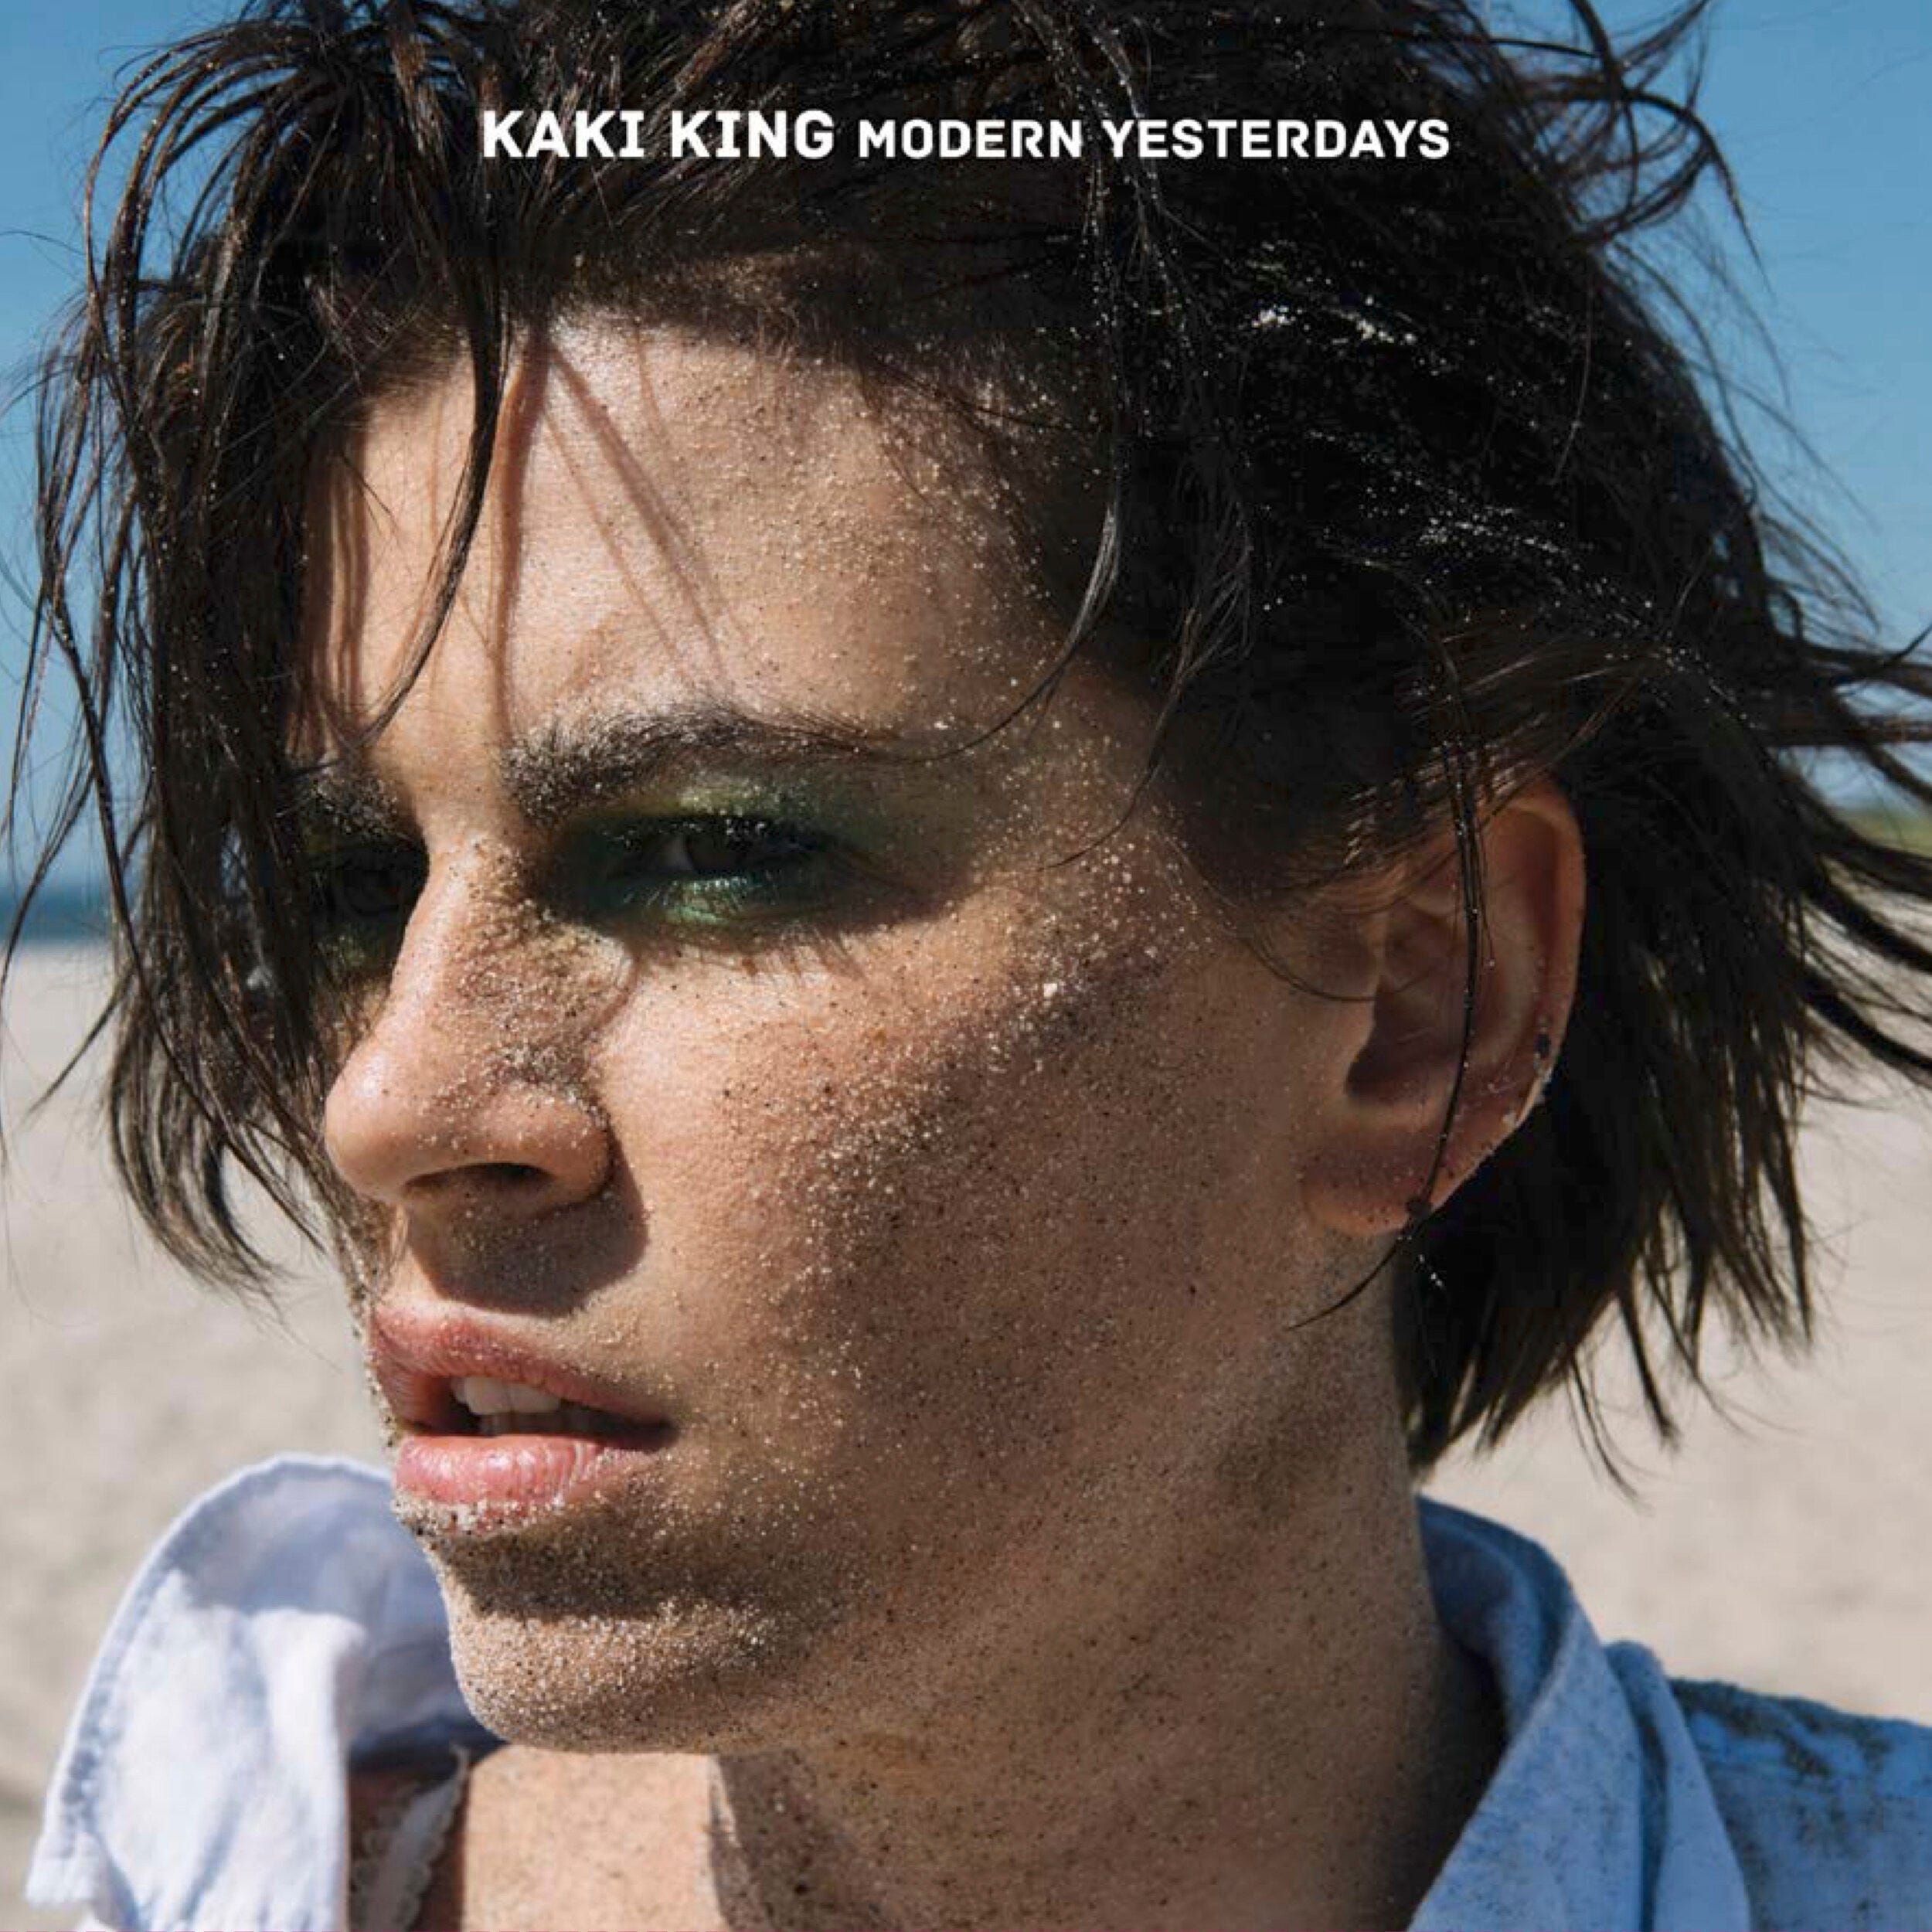 Kaki King - Modern Yesterdays cover art.jpg